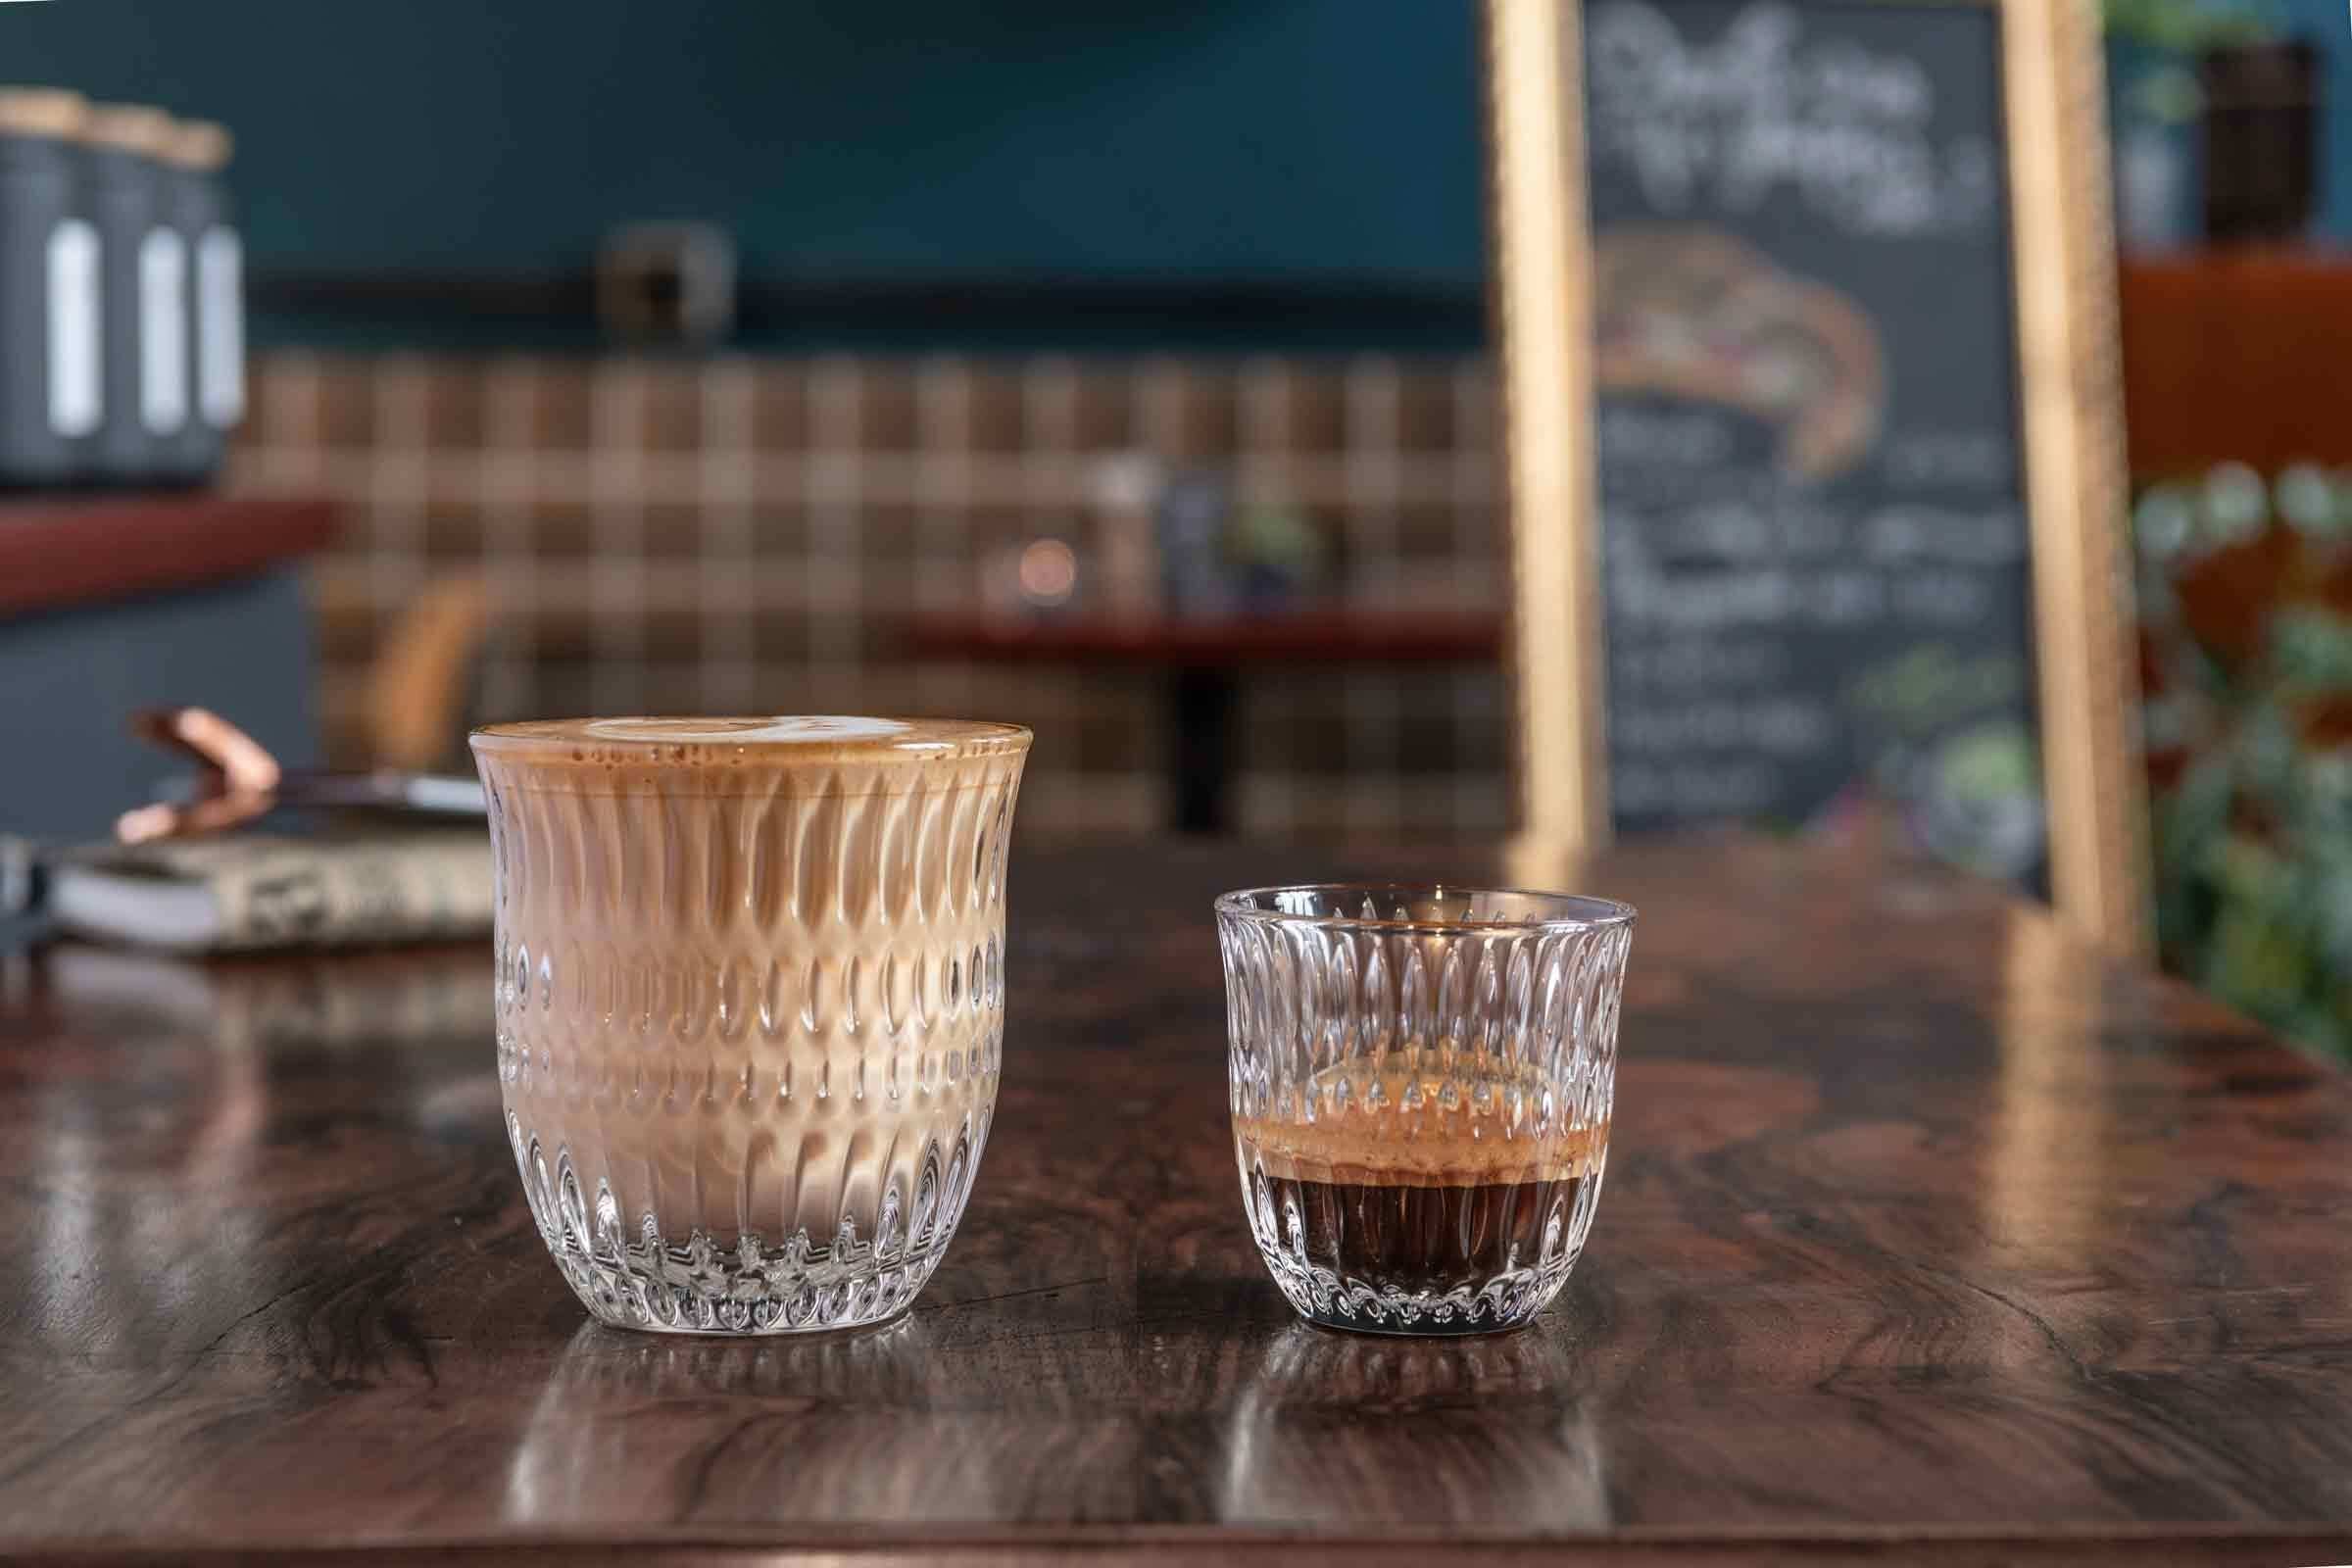 Espresso Nachtmann ml, 90 Gläser Barista Ethno Doppio / Espressoglas Glas